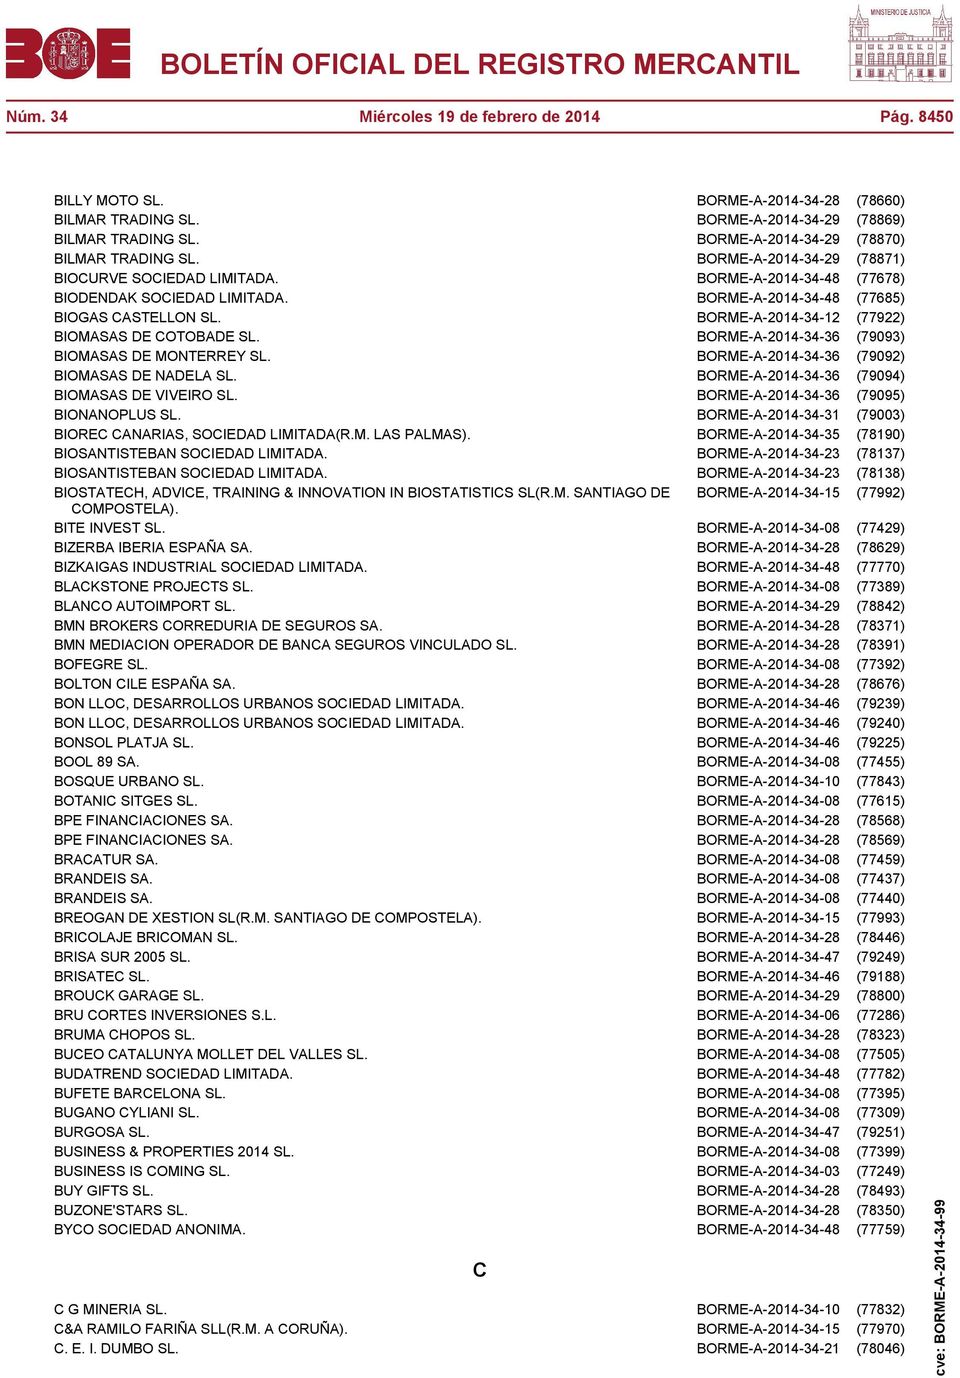 BORME-A-2014-34-48 (77685) BIOGAS CASTELLON SL. BORME-A-2014-34-12 (77922) BIOMASAS DE COTOBADE SL. BORME-A-2014-34-36 (79093) BIOMASAS DE MONTERREY SL.